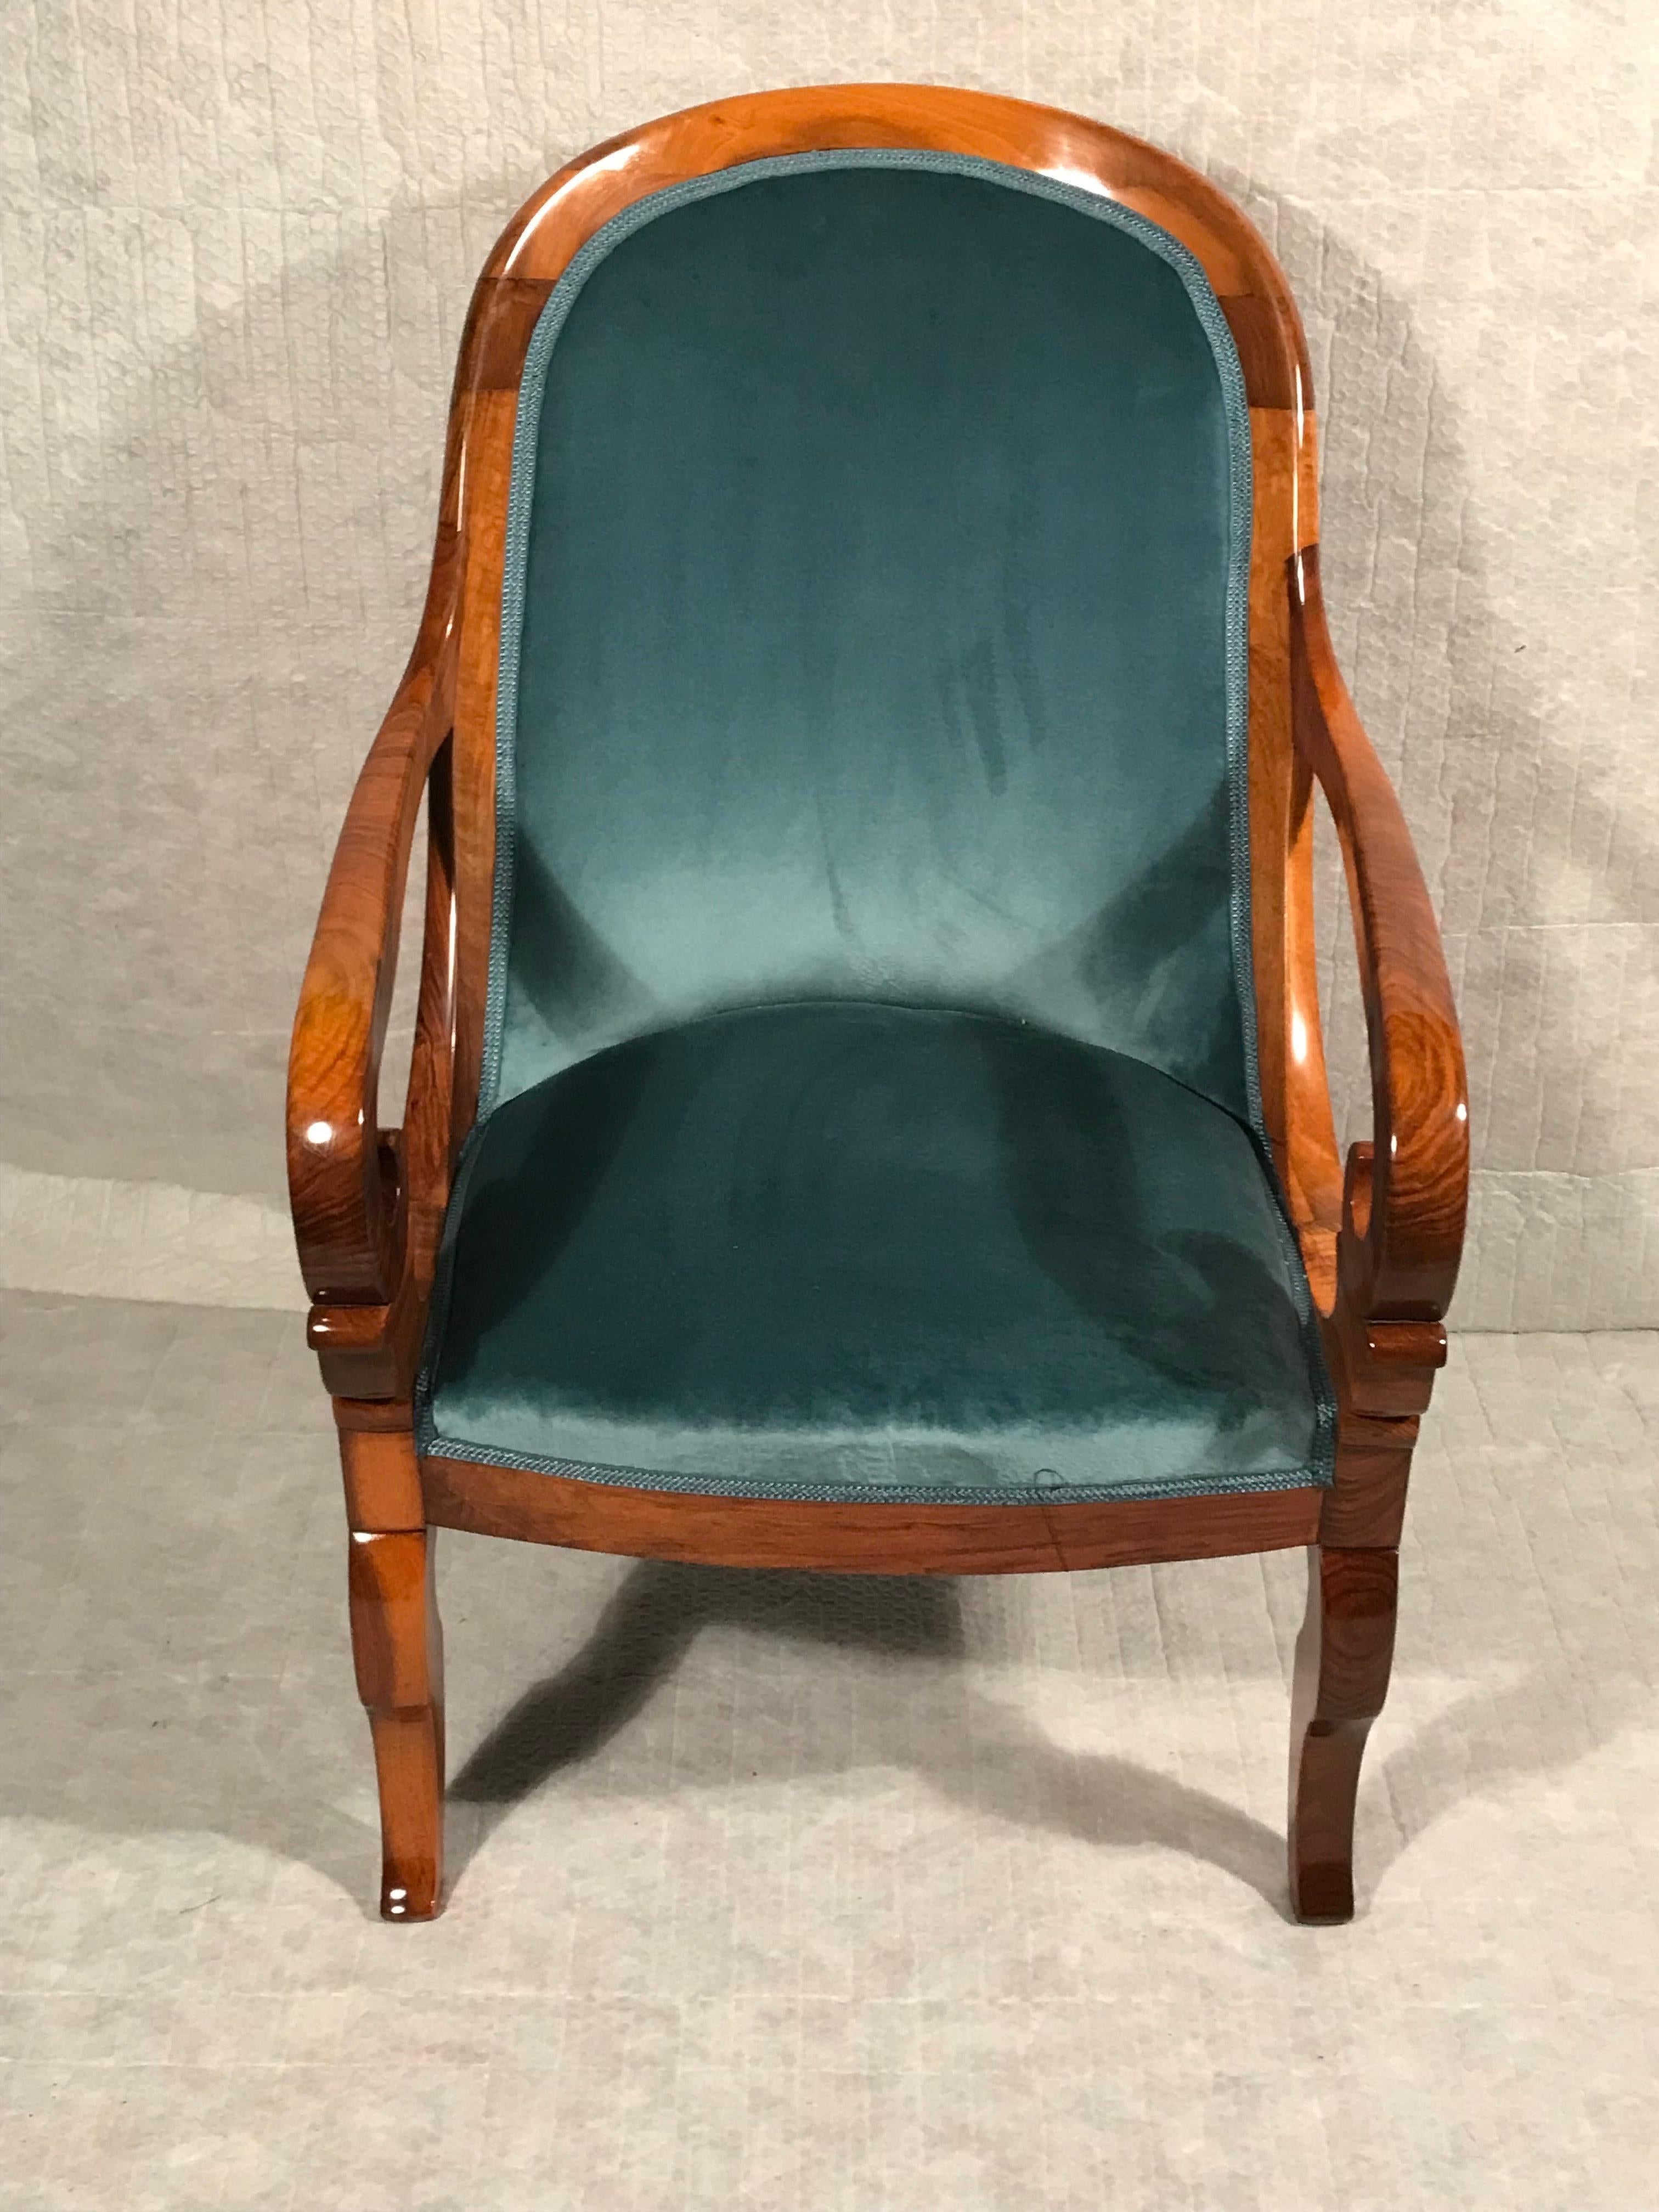 Biedermeier-Sessel, Südwestdeutschland, 1820. 
Dieser sehr bequeme Original Biedermeier Sessel oder Bergère kommt aus Südwestdeutschland. Es zeigt den Einfluss des französischen Restaurationsstils. 
(1814-30). Der Sessel hat schön geschwungene